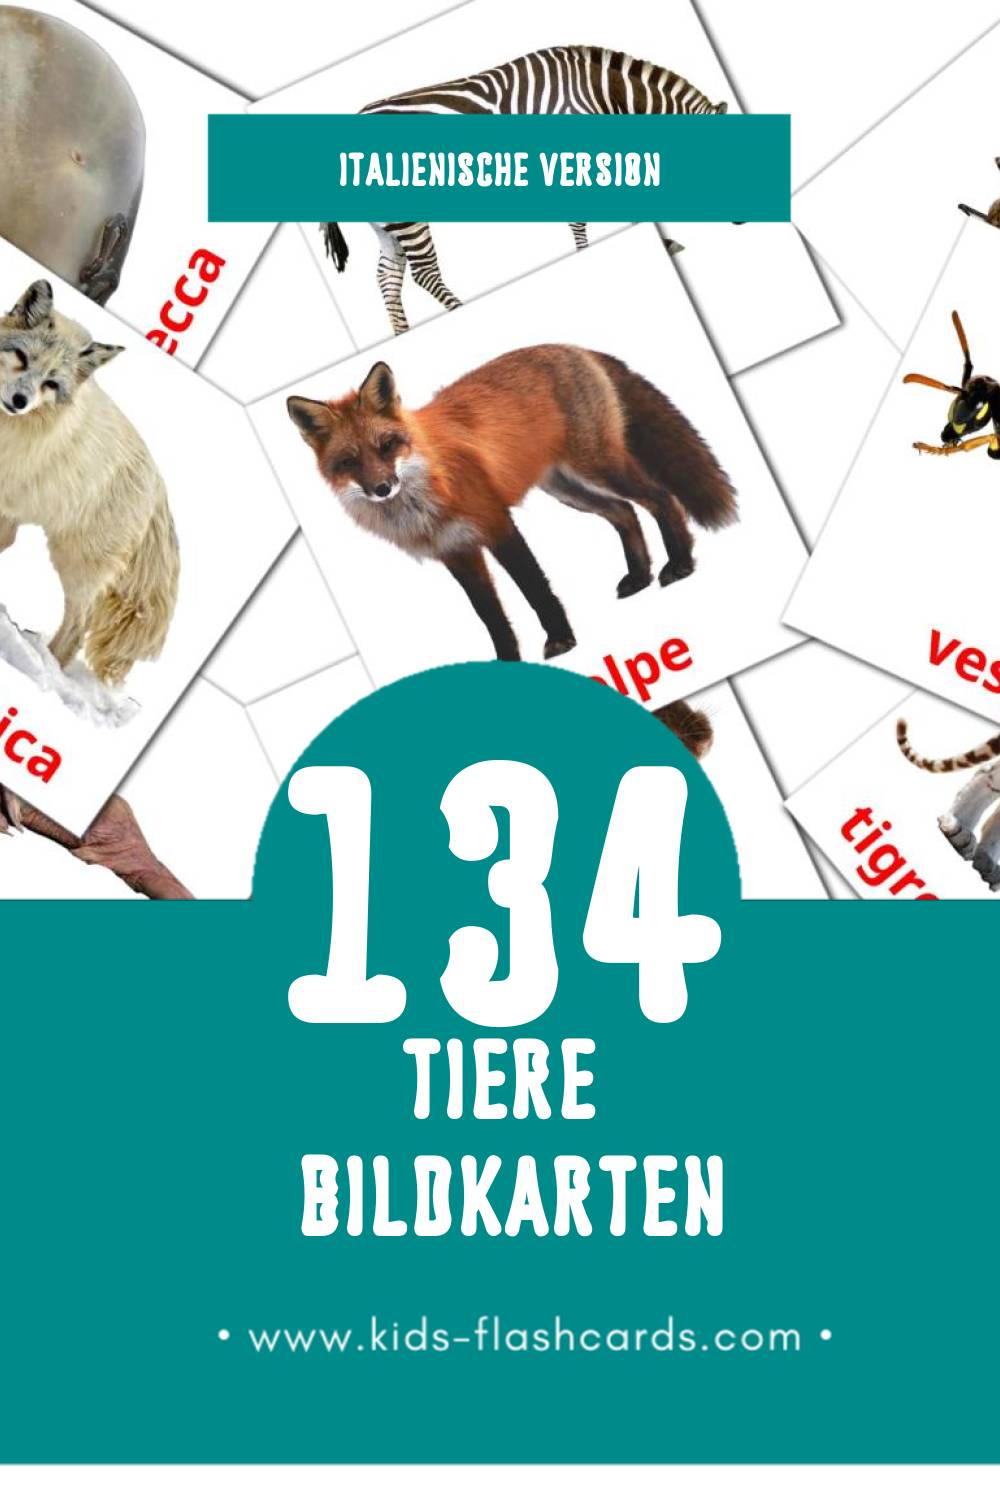 Visual Animali Flashcards für Kleinkinder (134 Karten in Italienisch)